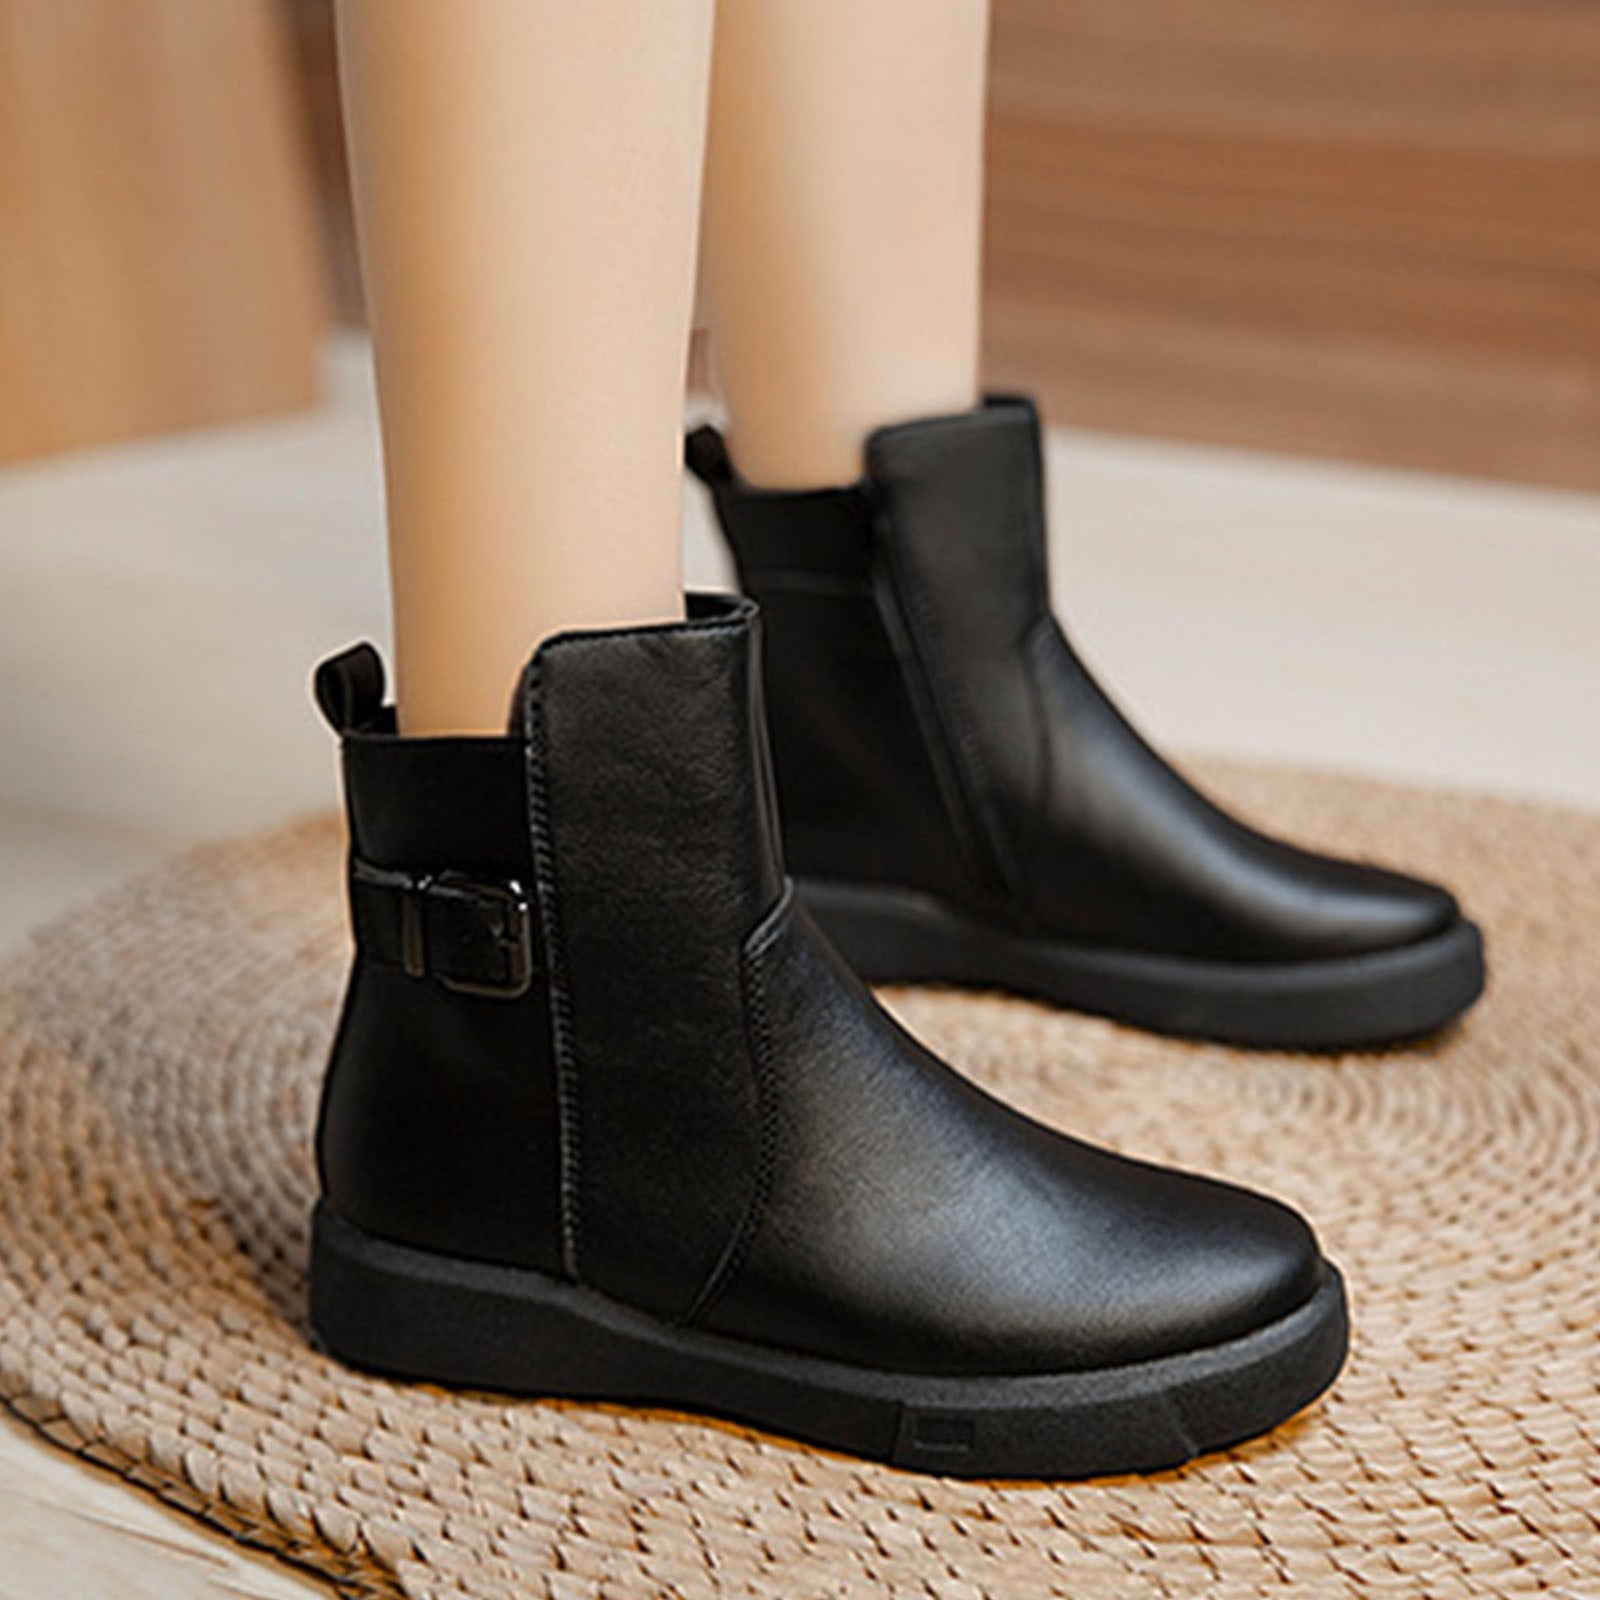 restaurant medier kontoførende Juebong Boots Deals Women's Ankle Boots Chelsea Boots Chunky Heel Platform  Low Heel Casual Outdoor Indoor Slip Resistant Zipper Shoes,Black,6.5 -  Walmart.com